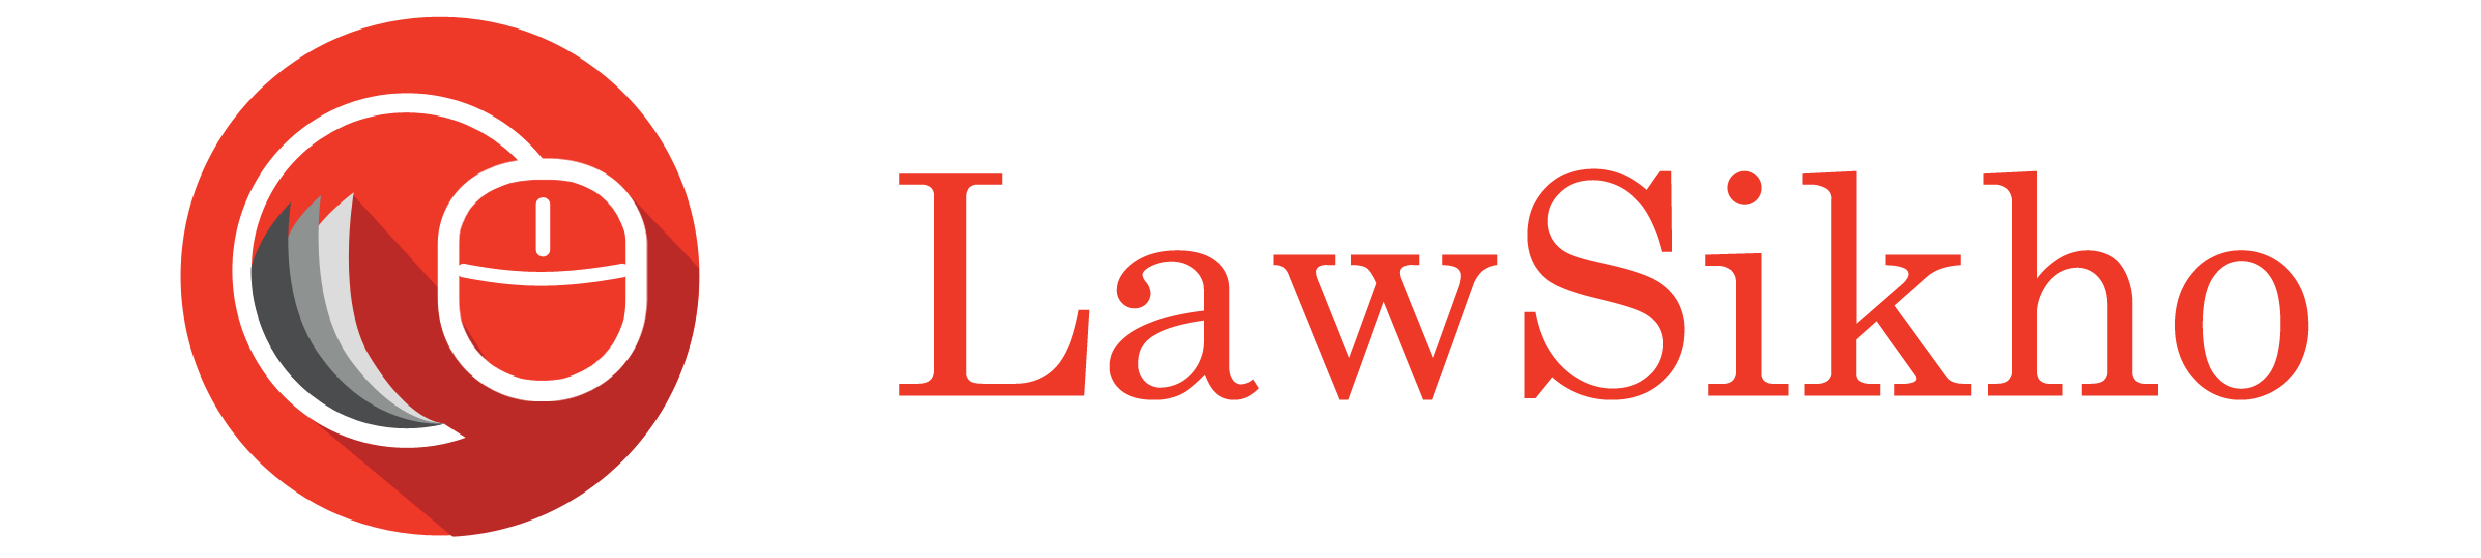 LawSikho Logo 3